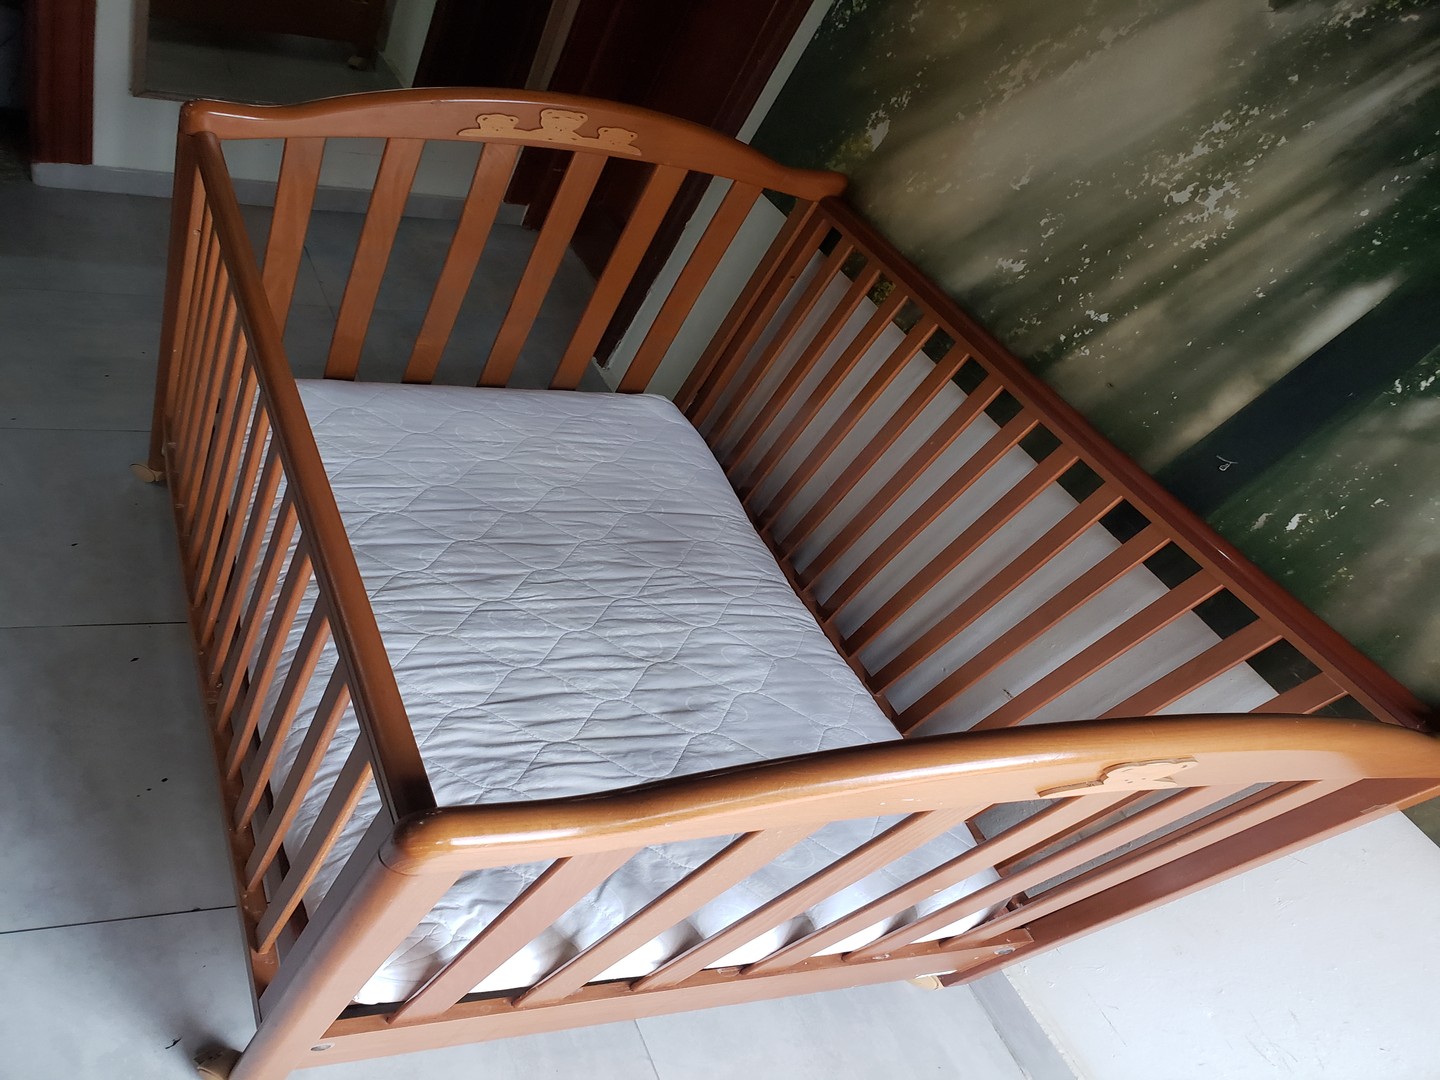 muebles - Cuna importada de italia, madera preciosa, incluye colchón.  2